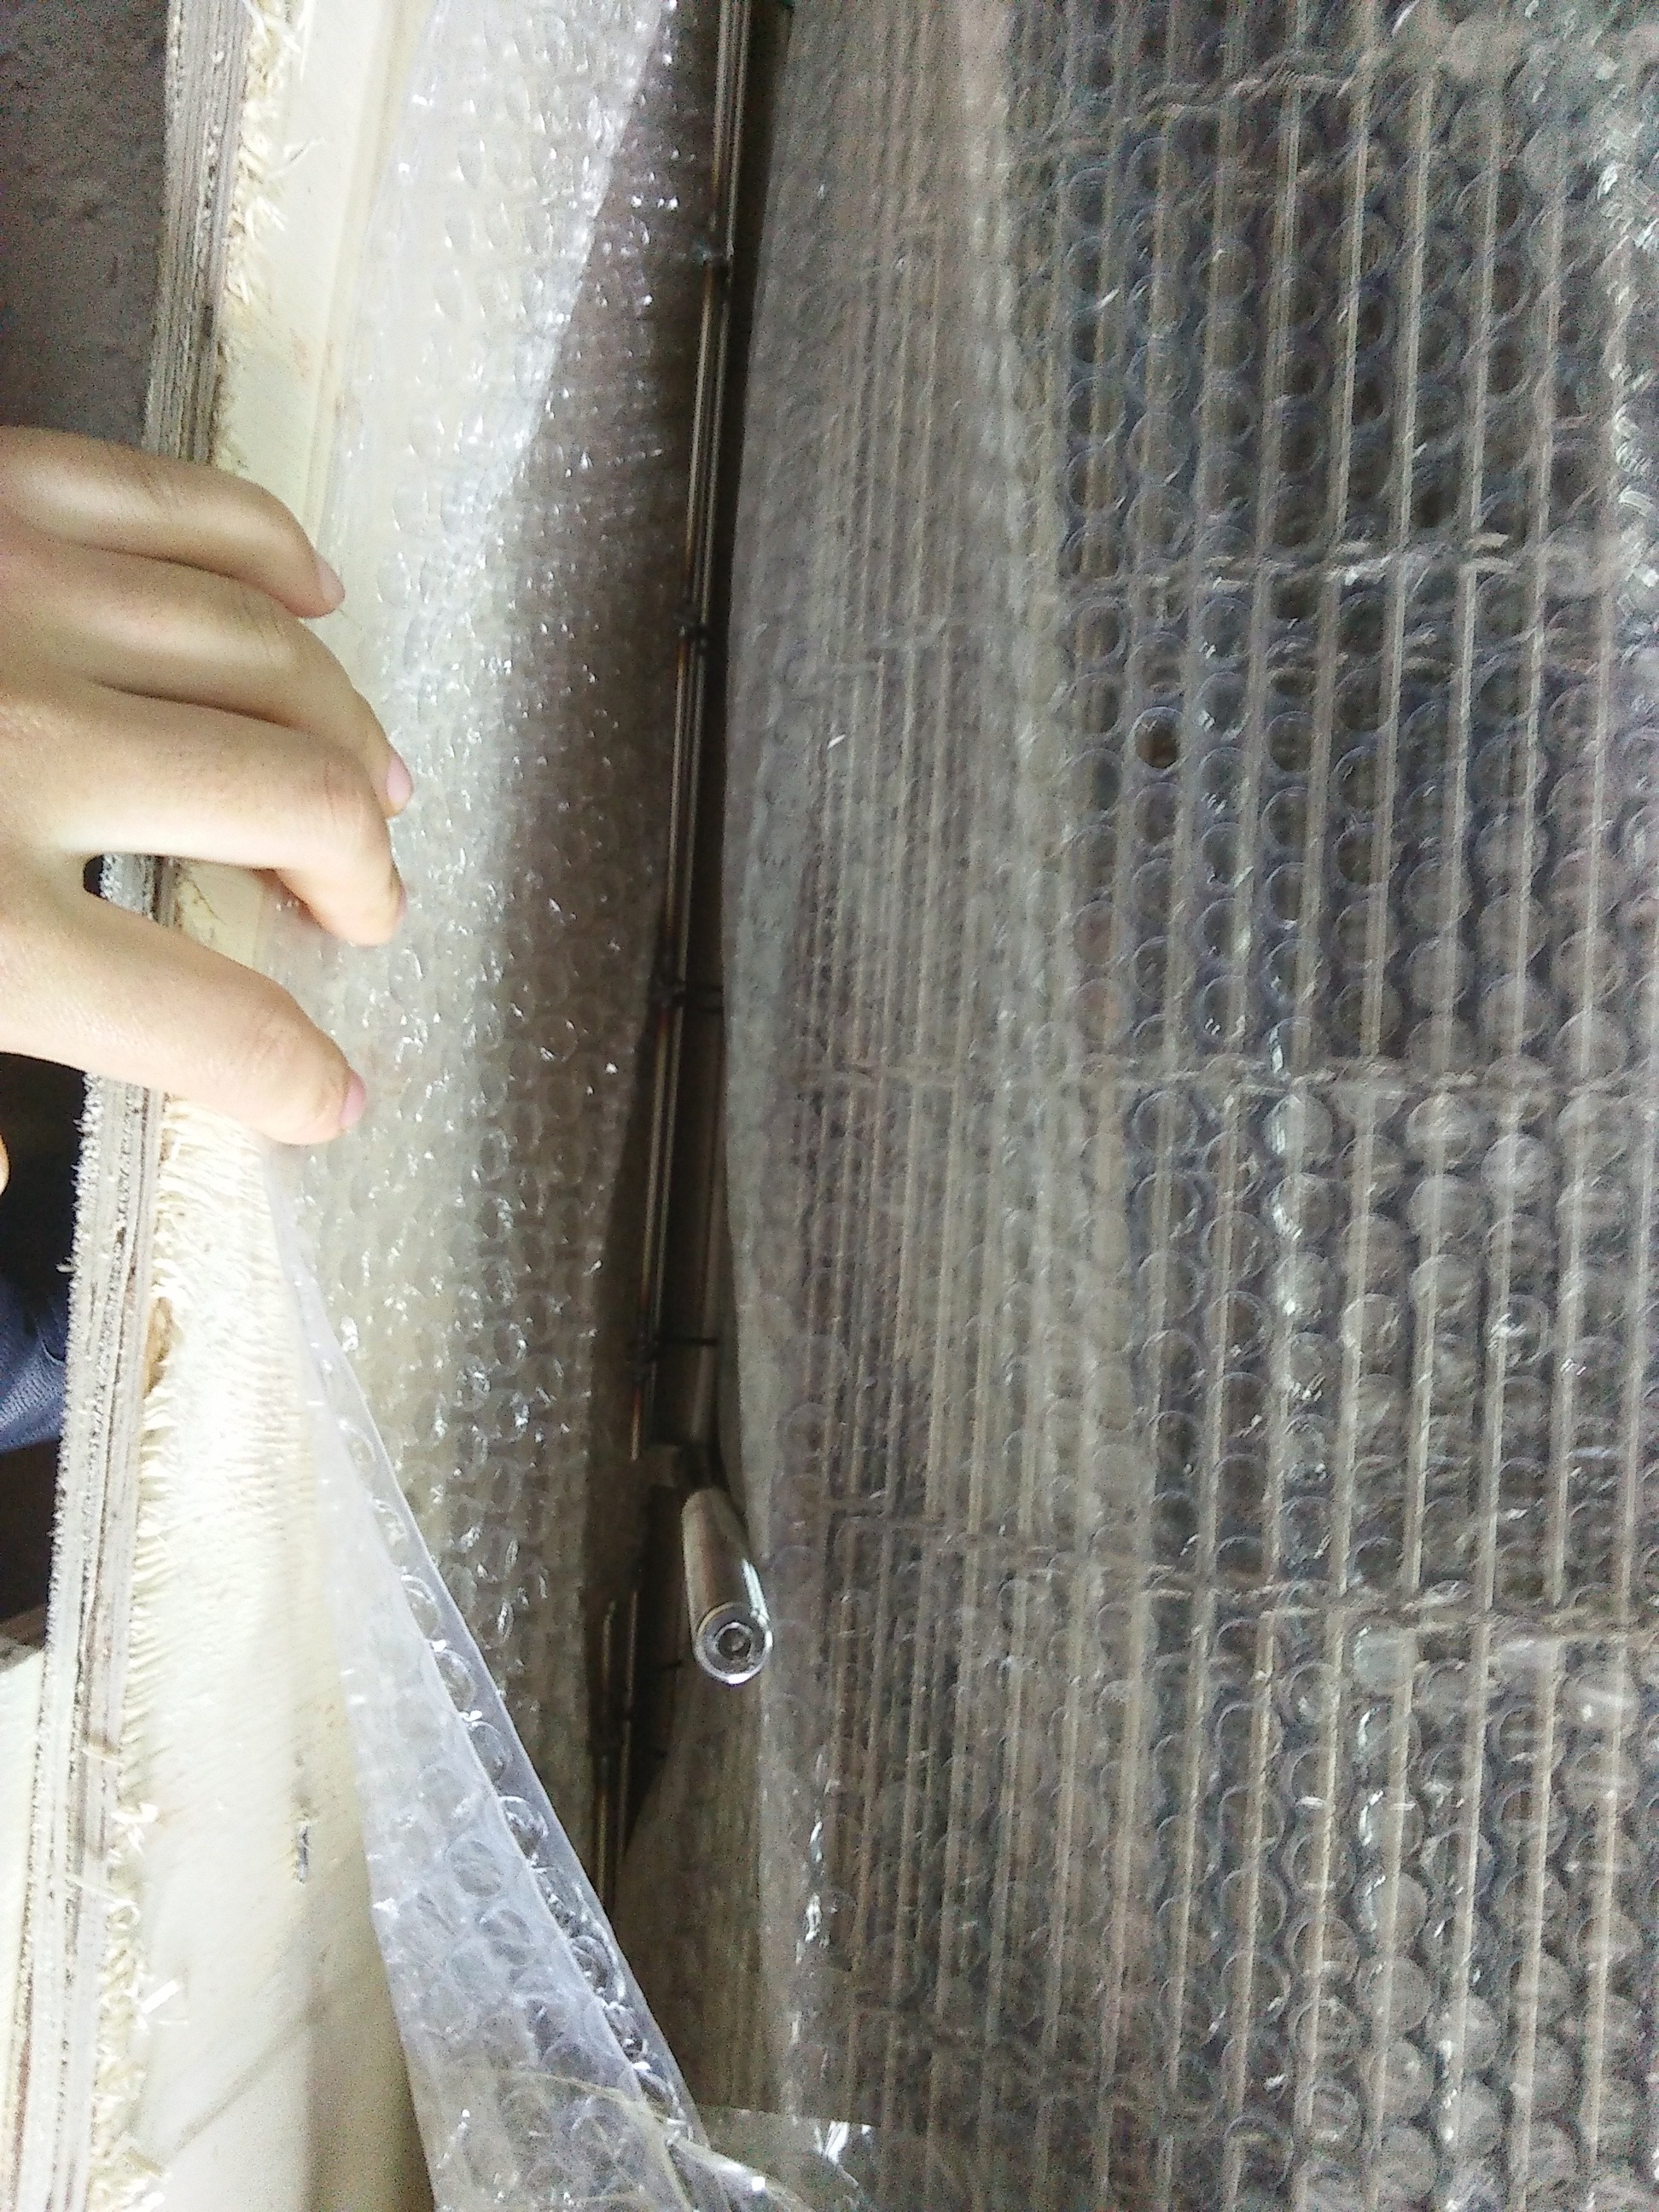 Aluminum weave wire mesh